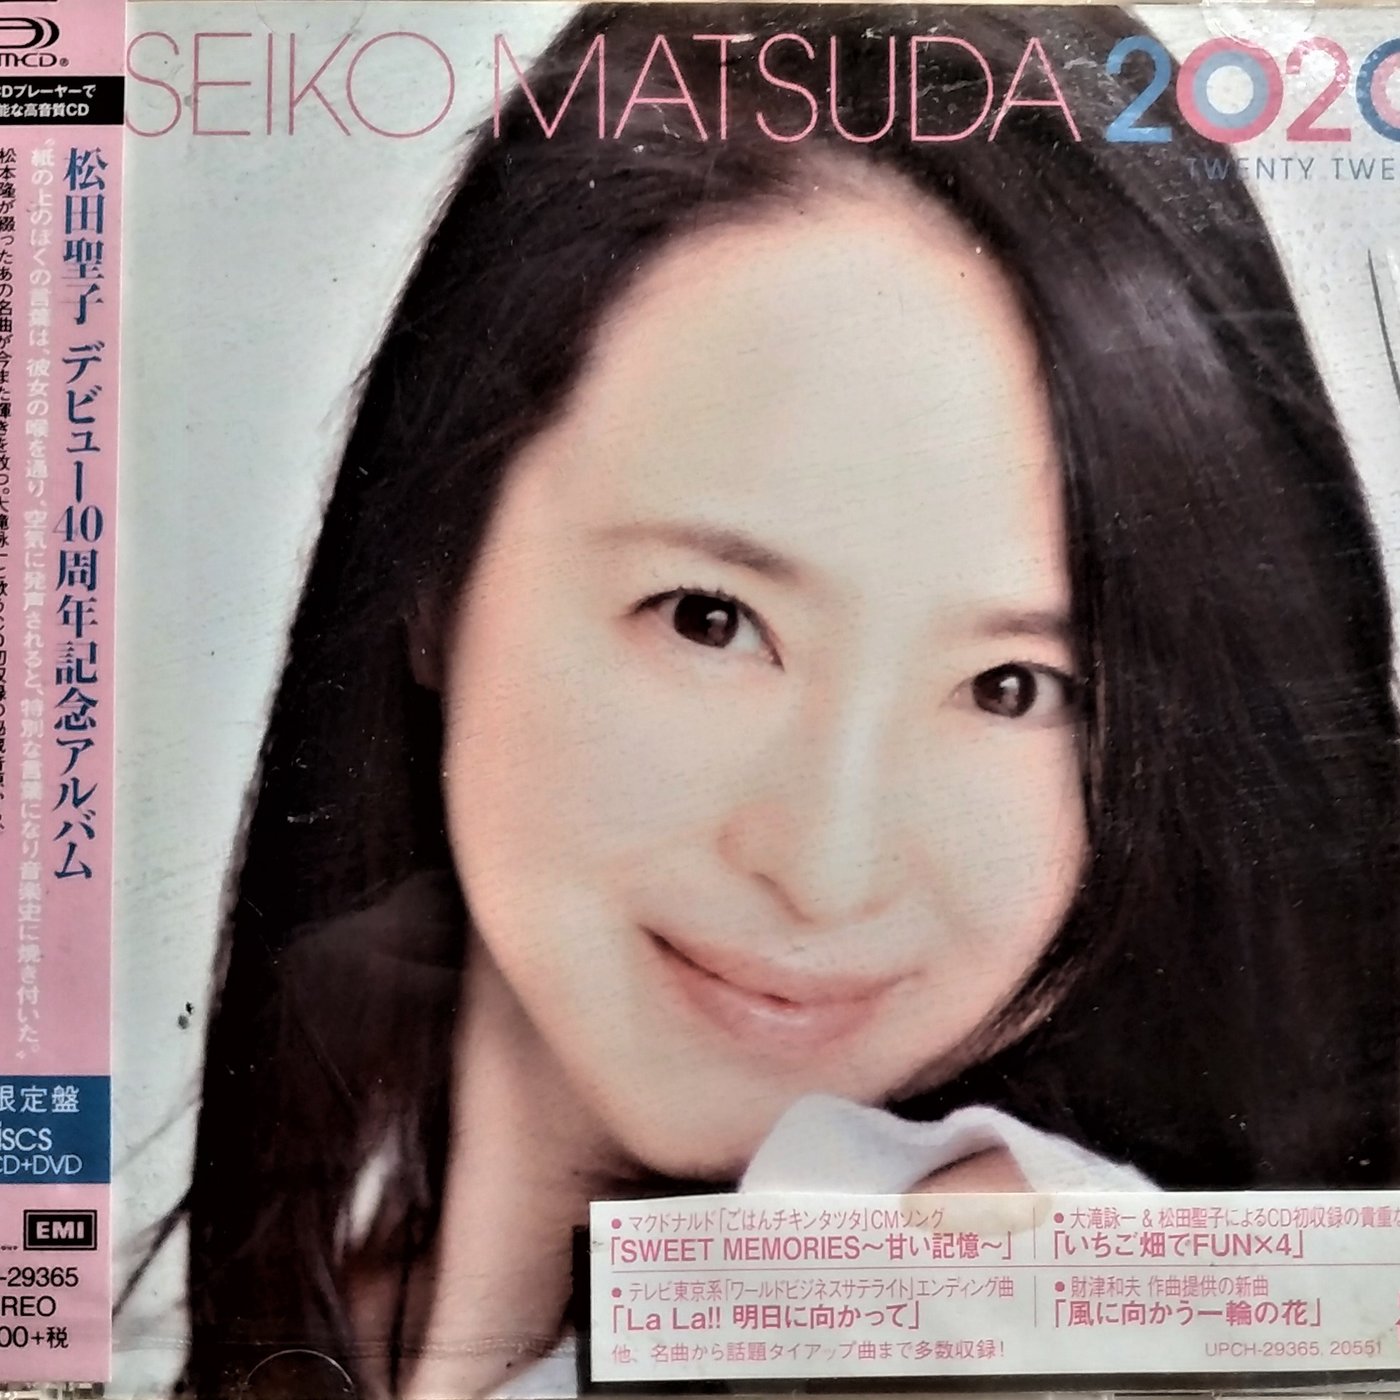 松田聖子- SEIKO MATSUDA 2020 【初回限定盤】(SHM-CD + DVD 